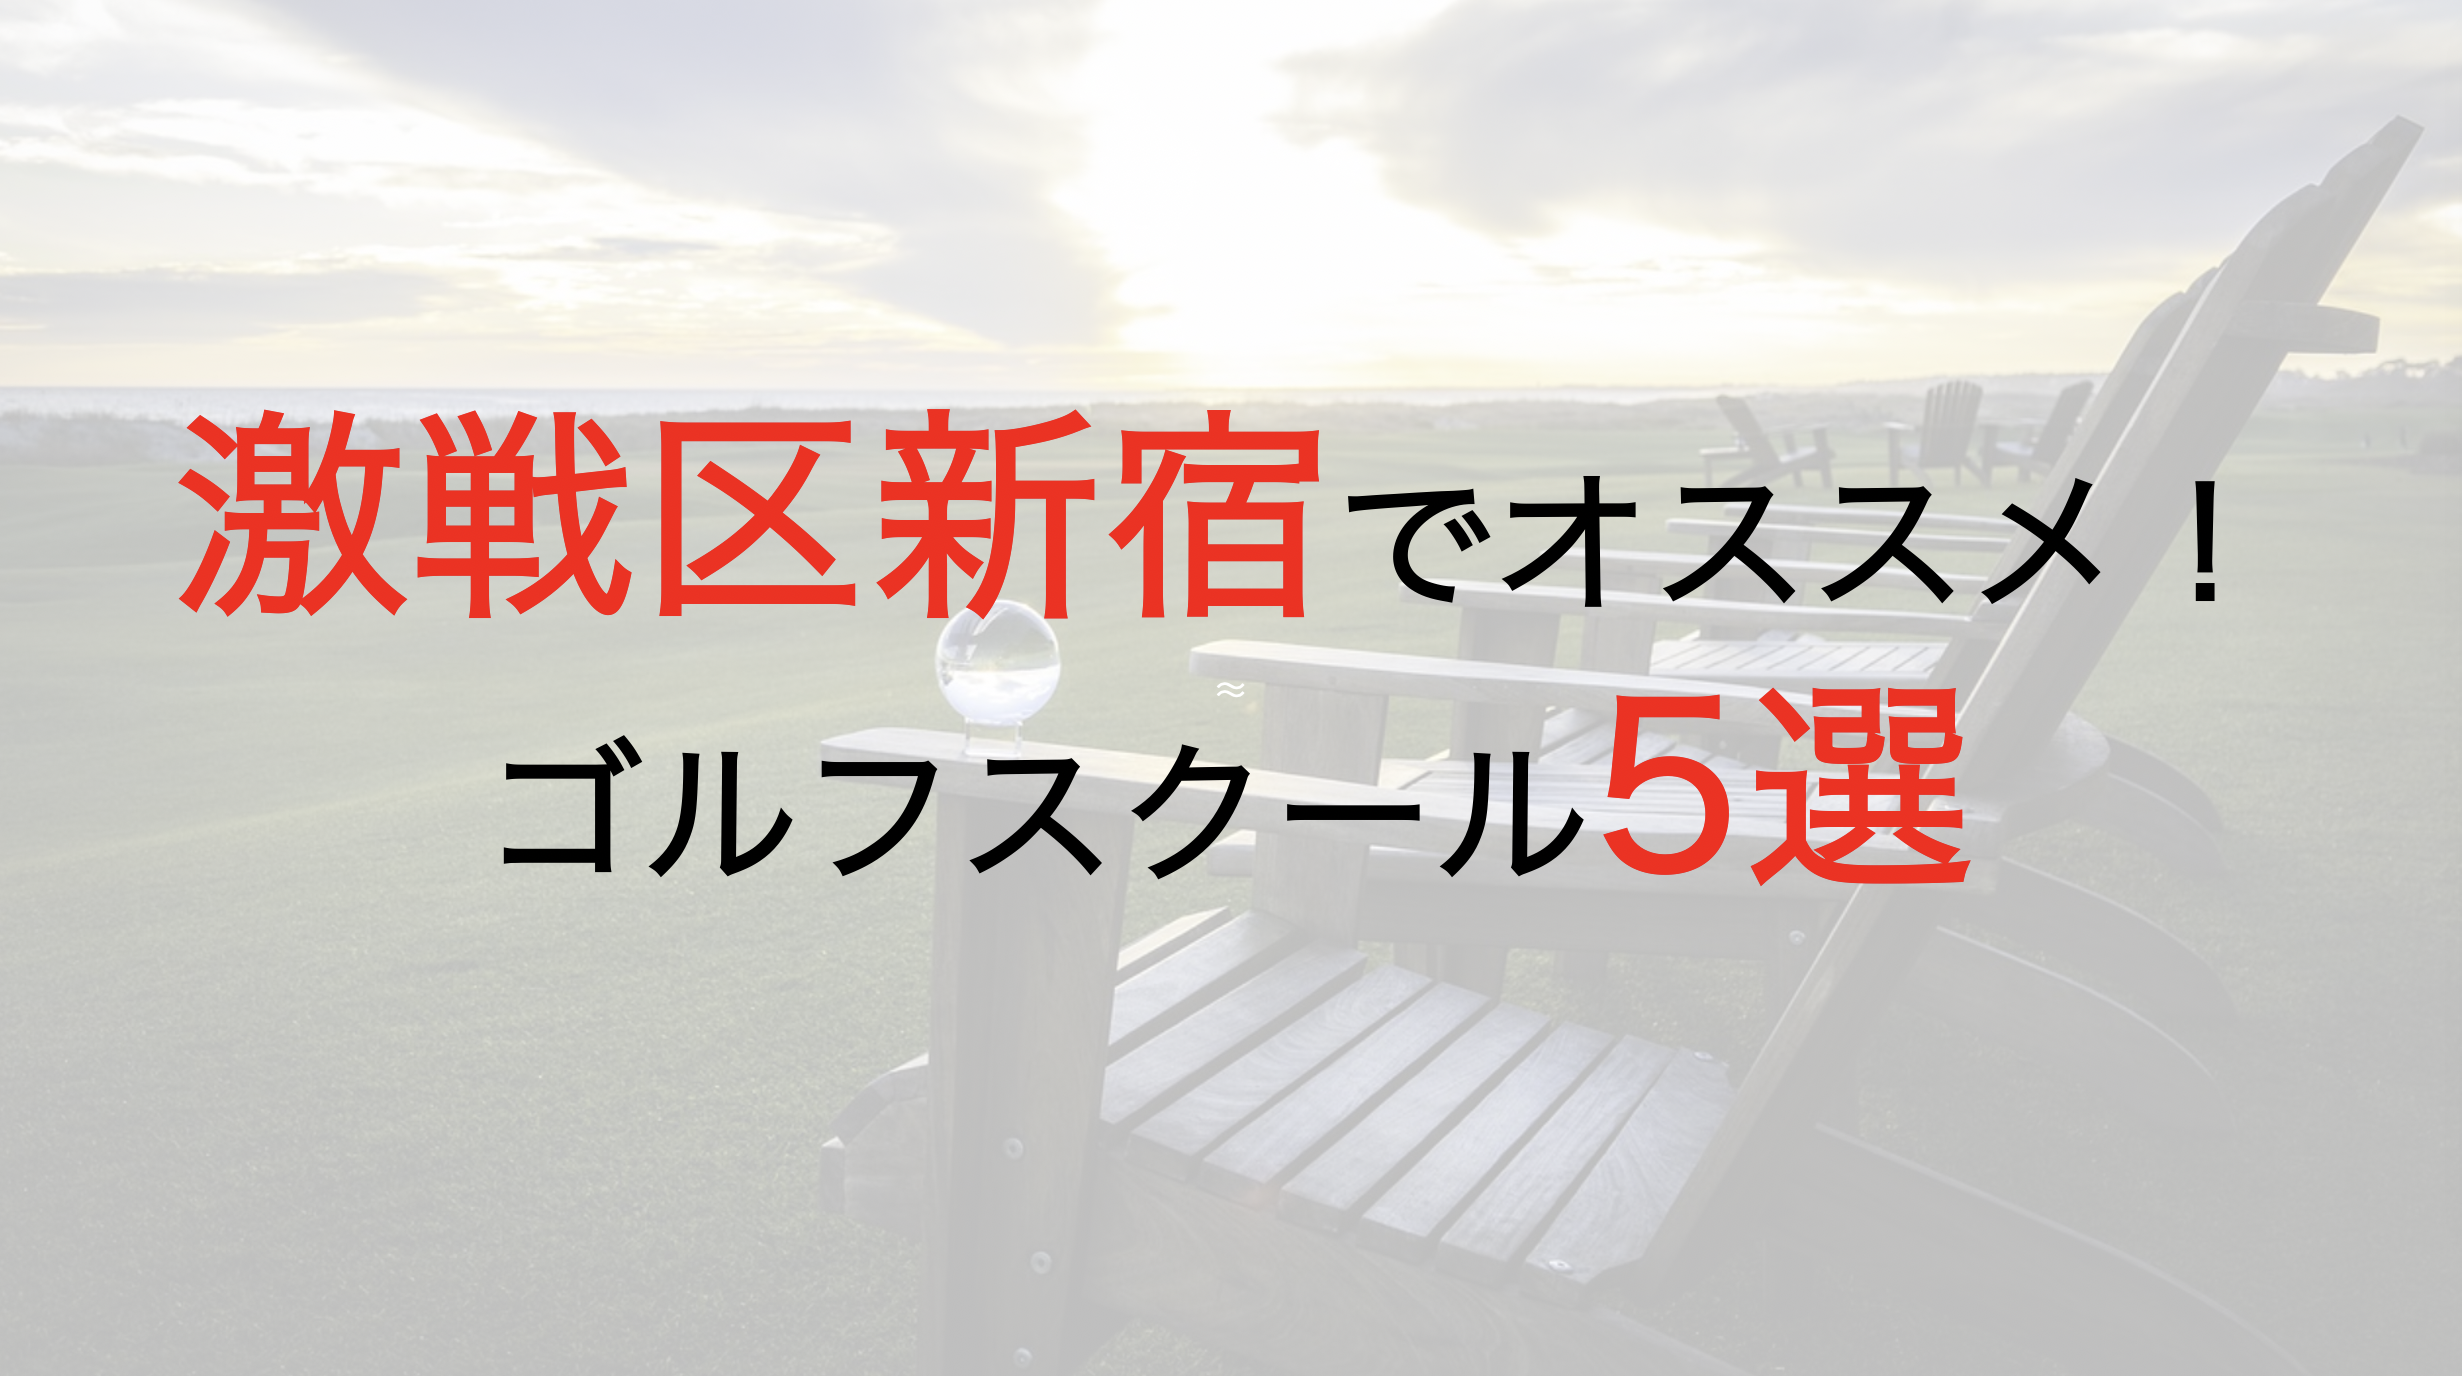 新宿で人気おすすめゴルフスクール厳選5選【体験レッスンあり】